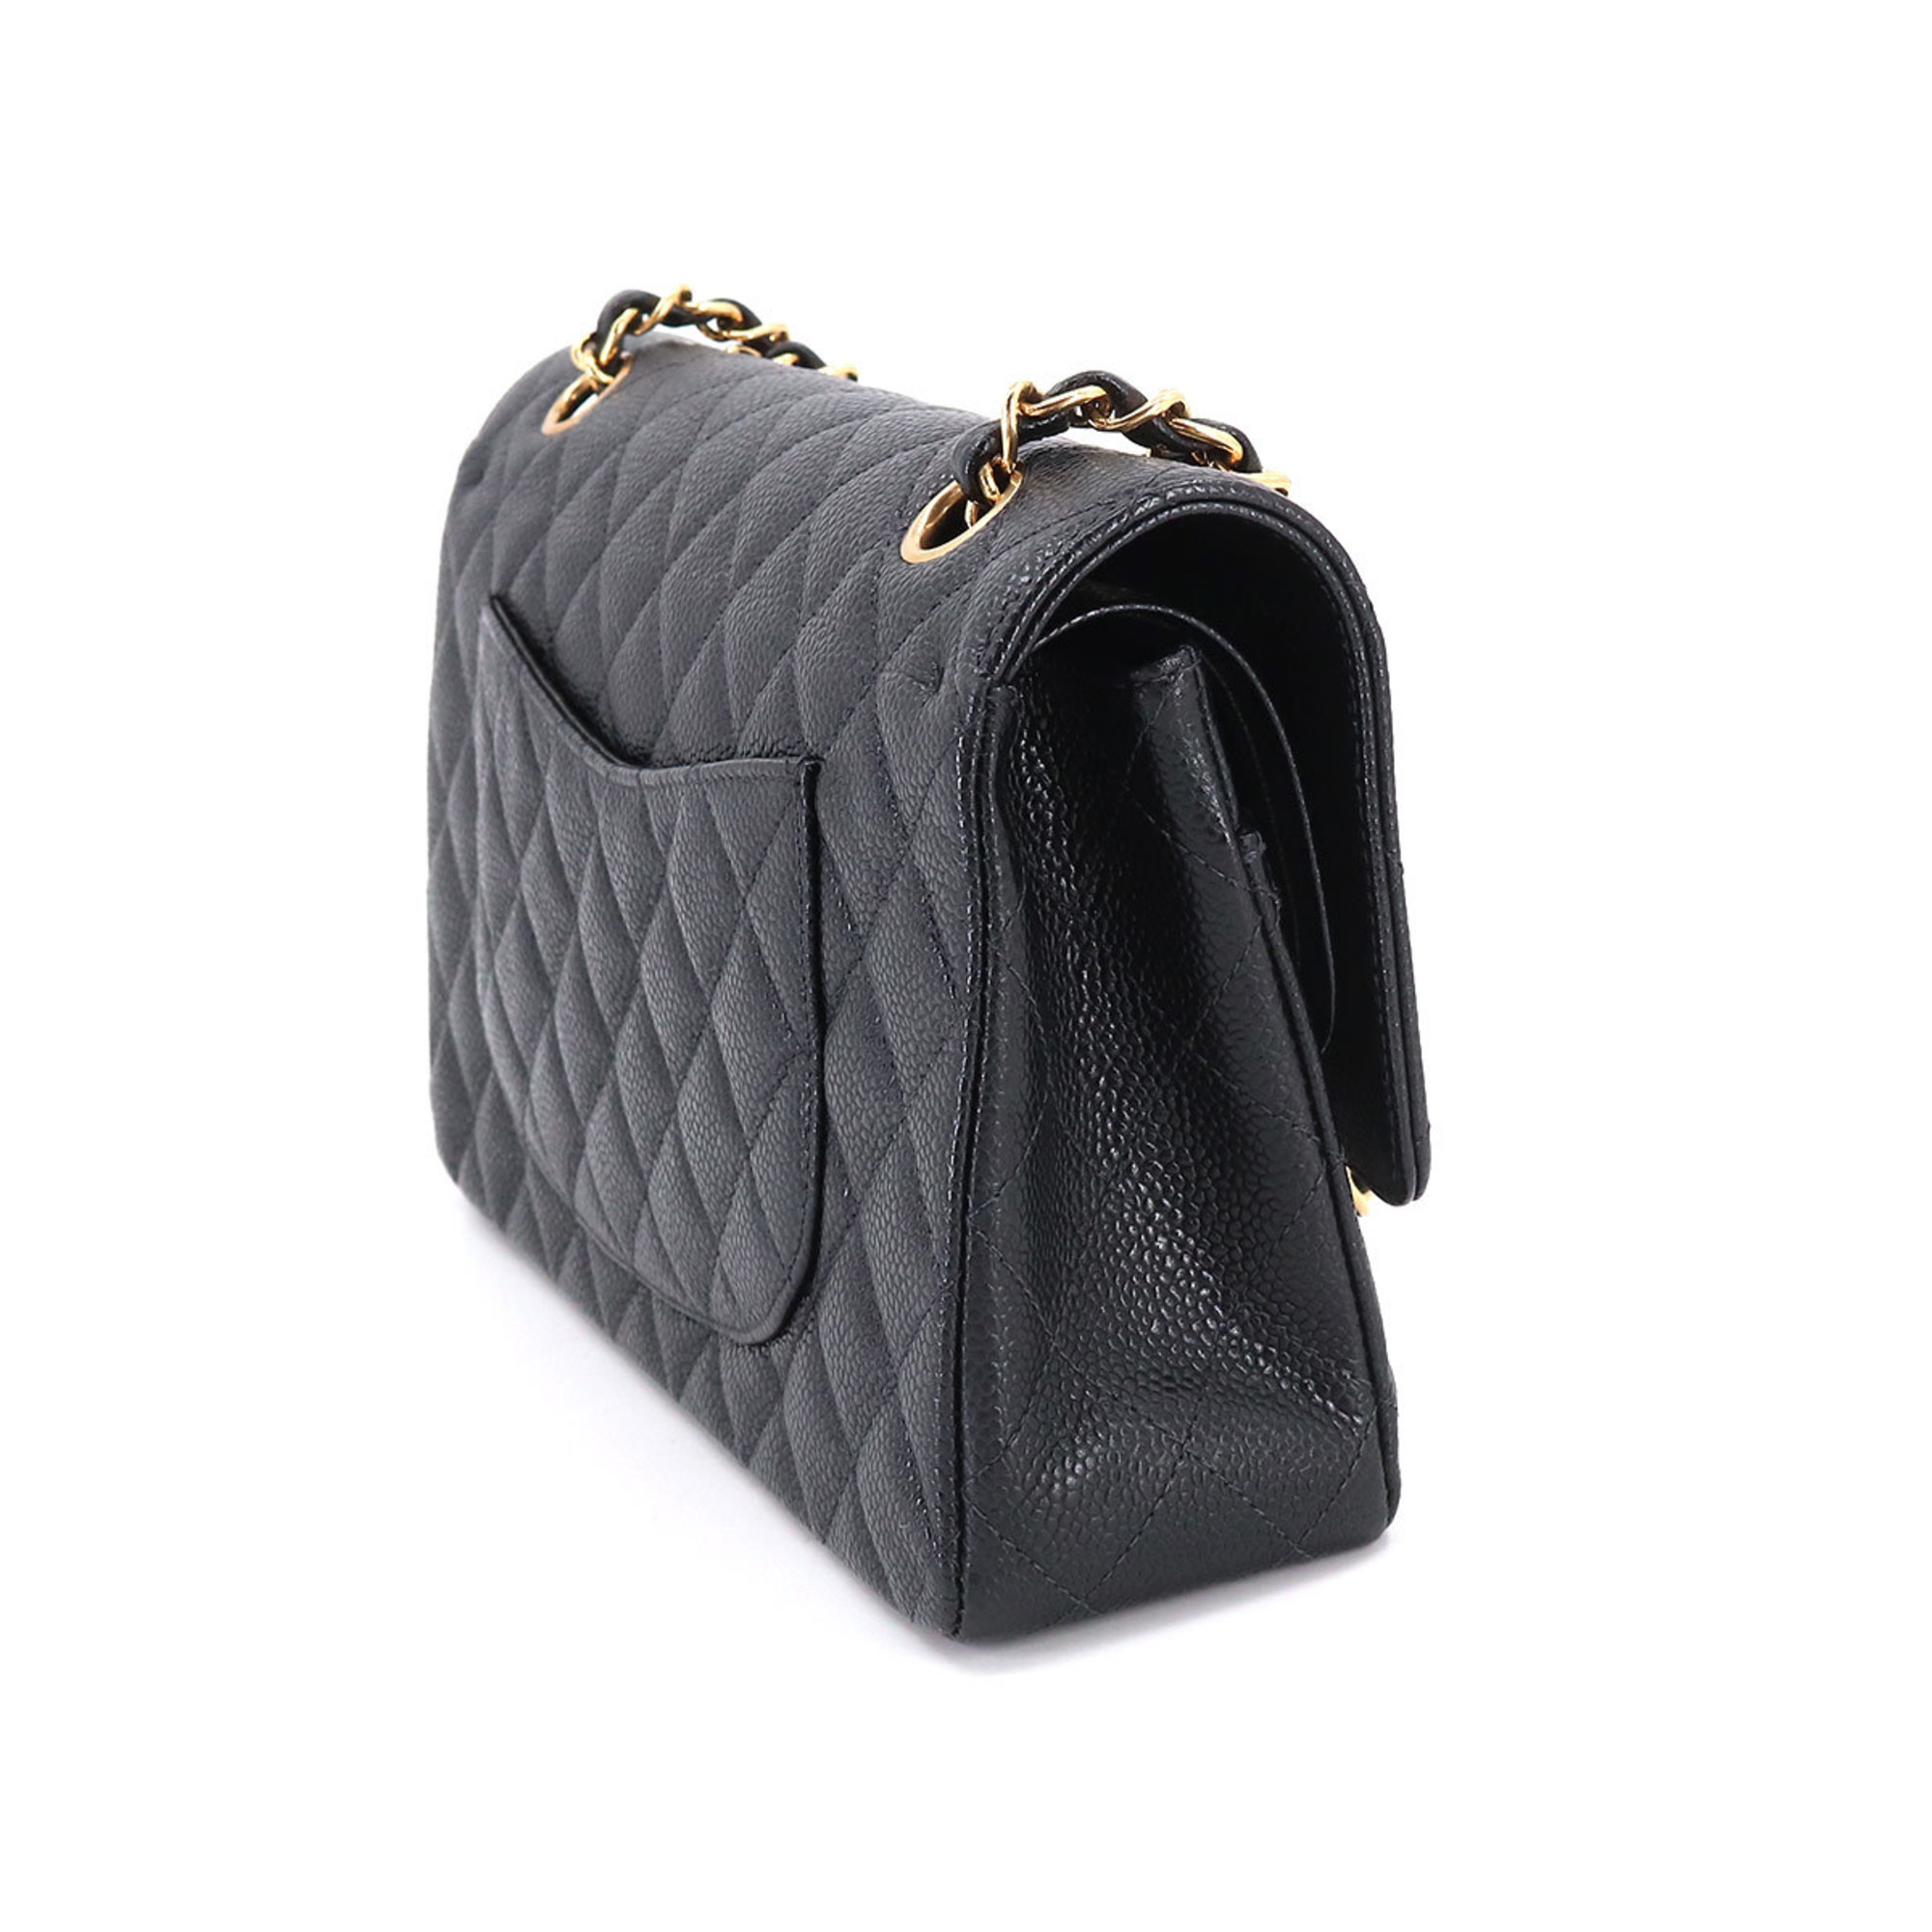 CHANEL Matelasse 25 Chain Shoulder Bag Caviar Skin Black A01112 Gold Hardware Coco Mark Vintage